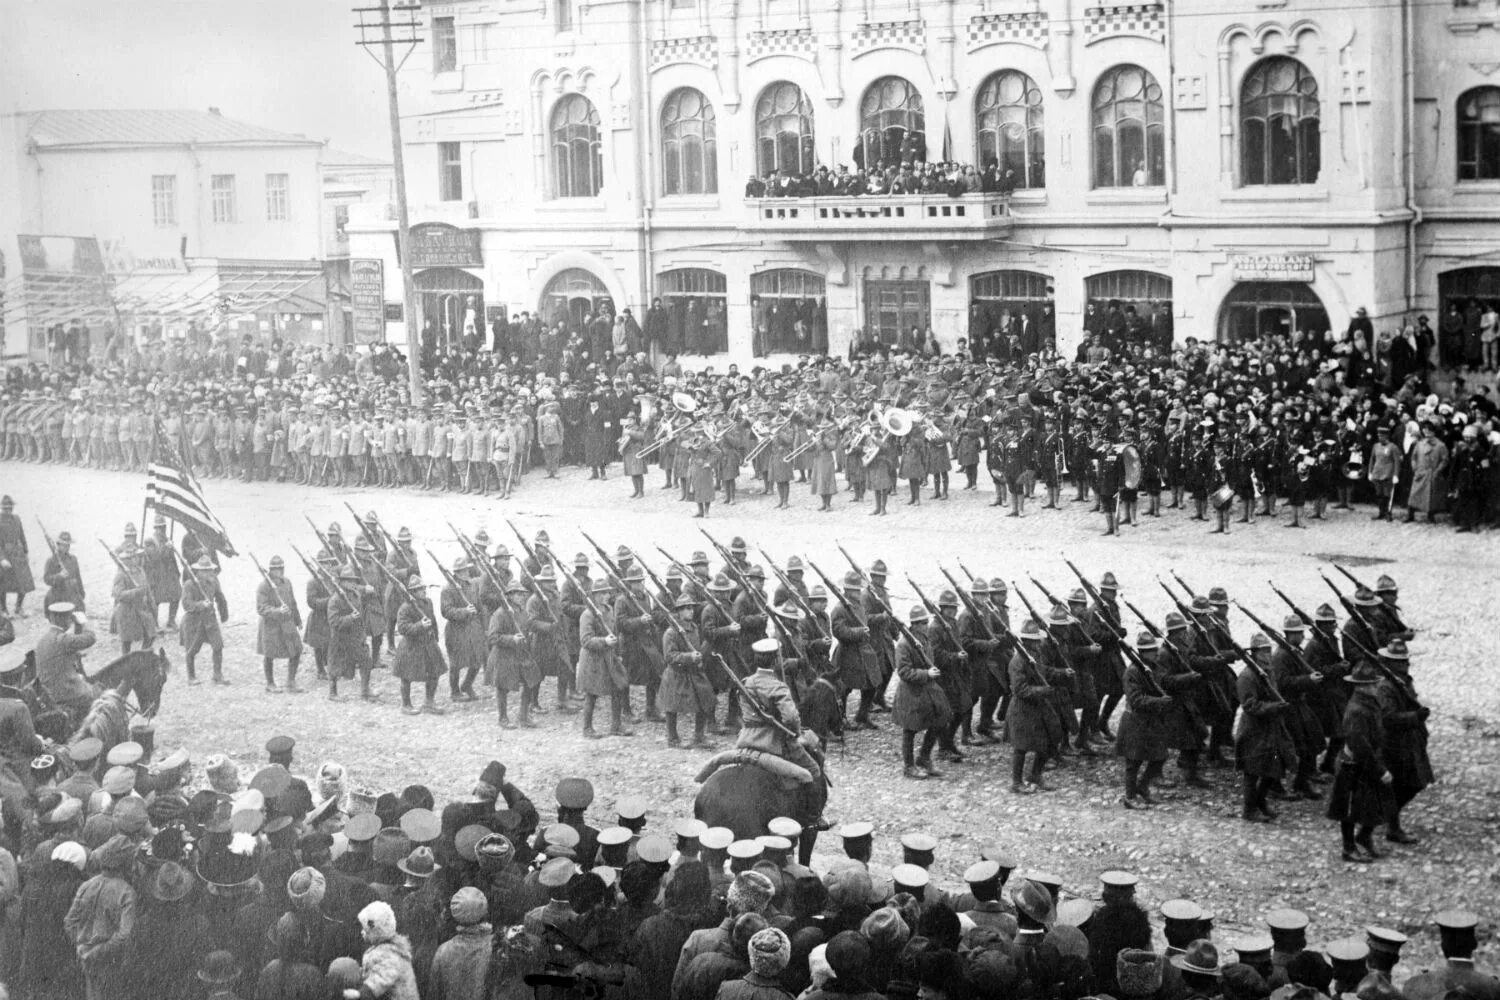 1918 1920 1922. Владивосток парад интервентов 1918. Американские войска во Владивостоке 1918. Американская интервенция в России в 1918-1921. Американские войска во Владивостоке, август 1918 года.